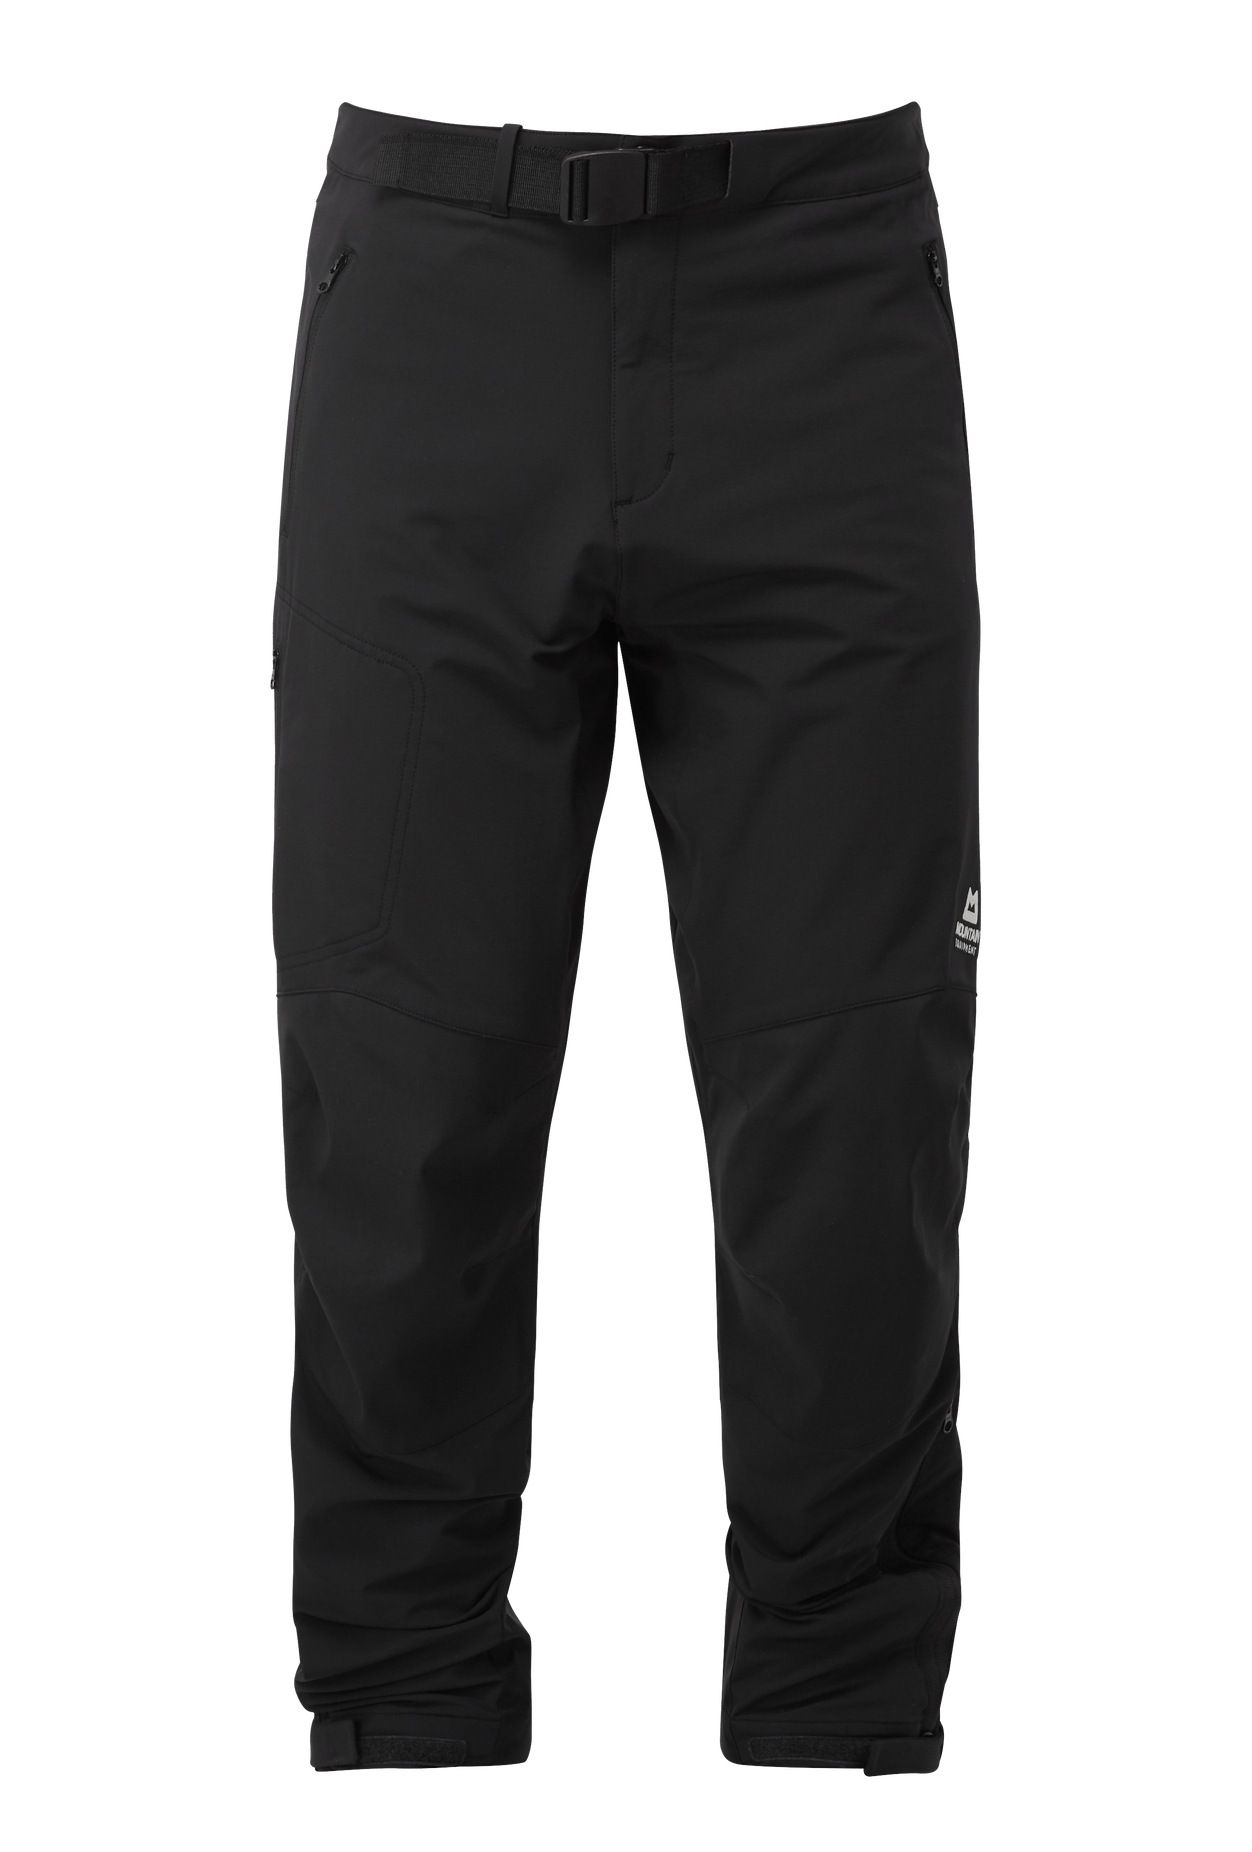 Mountain Equipment pánské softshellové kalhoty Mission Pant - zkrácené Barva: black, Velikost: 32/M